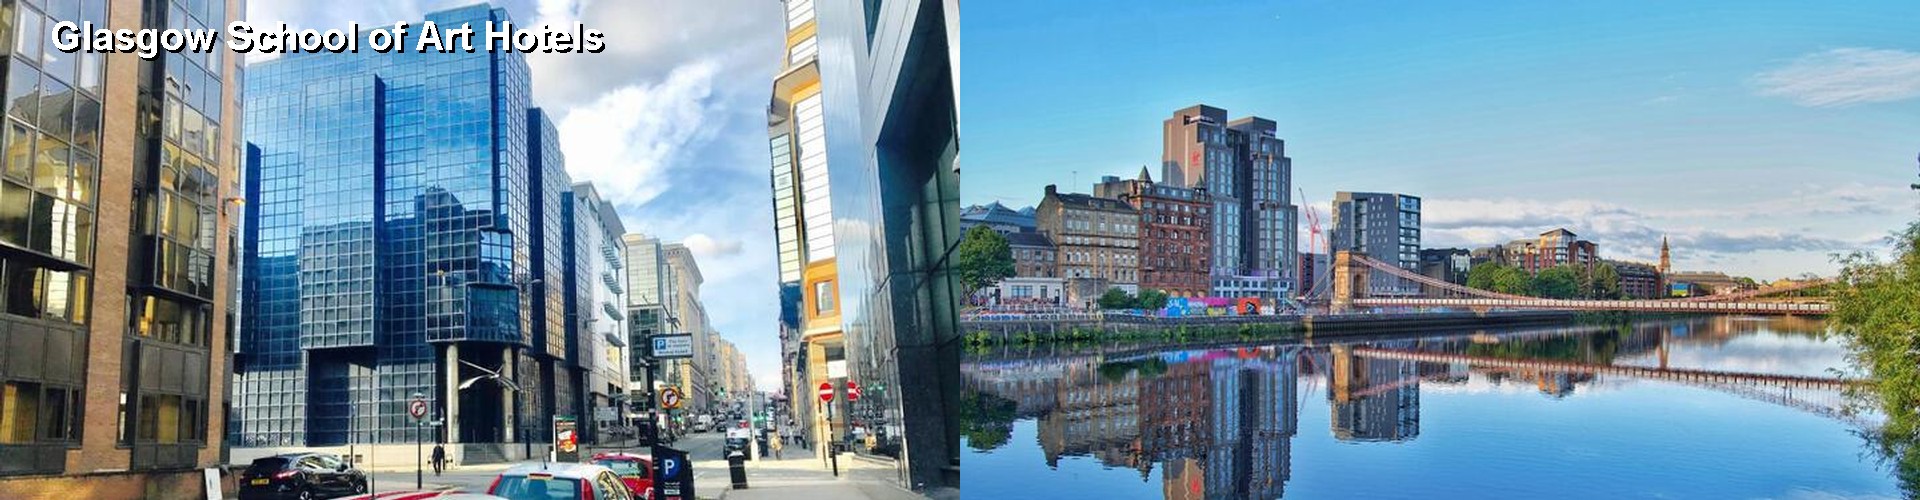 5 Best Hotels near Glasgow School of Art